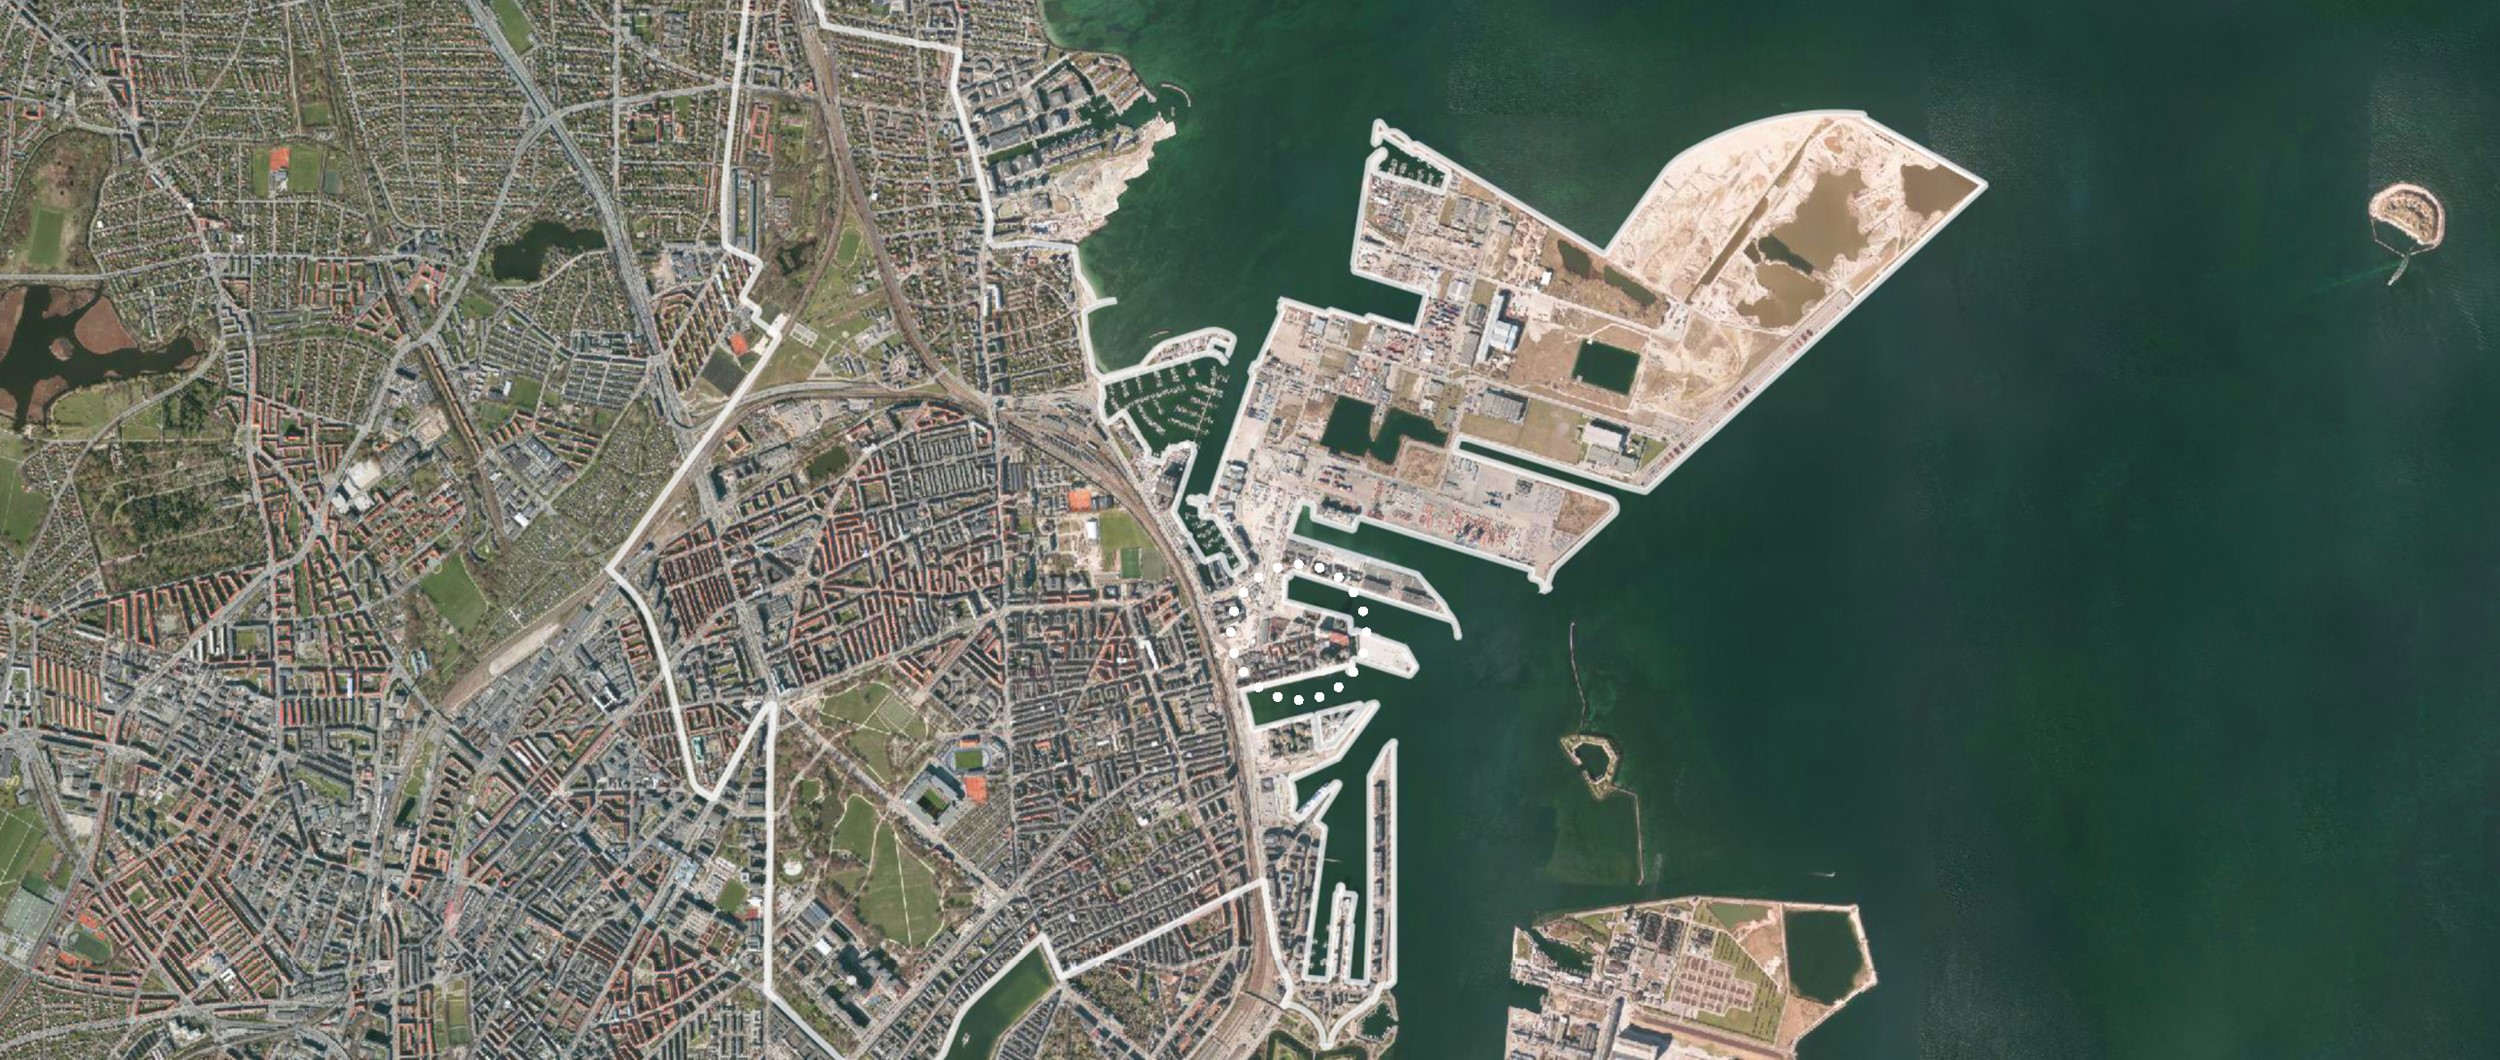 Nordhavnen er en bydel i København, som over de sidste år er blevet omdannet fra industriområde til boligområde.